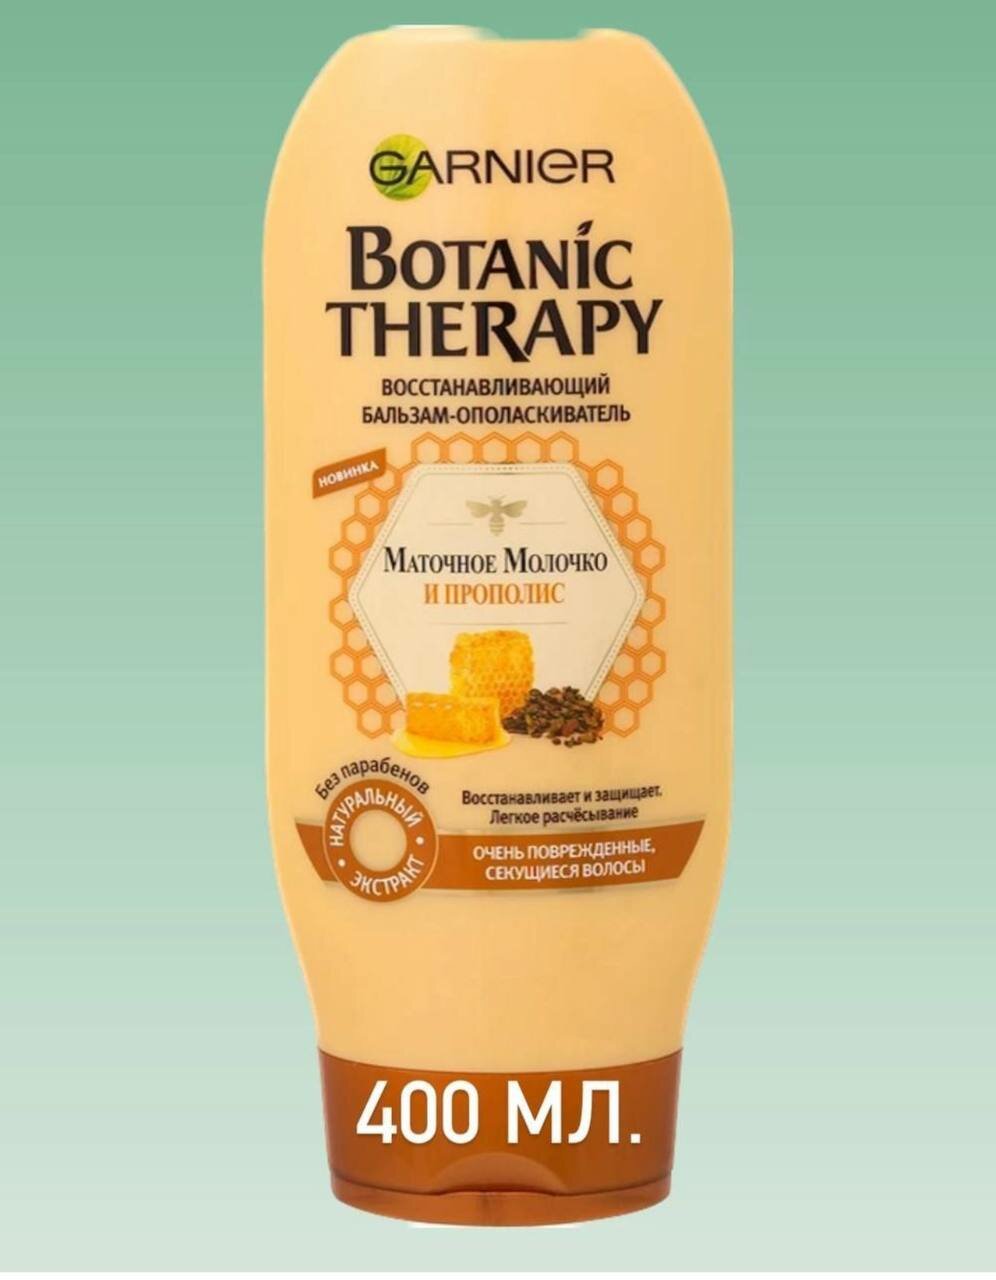 GARNIER бальзам-ополаскиватель Botanic Therapy Маточное молочко и Прополис Восстанавливающий для очень поврежденных, секущихся волос, 400 мл